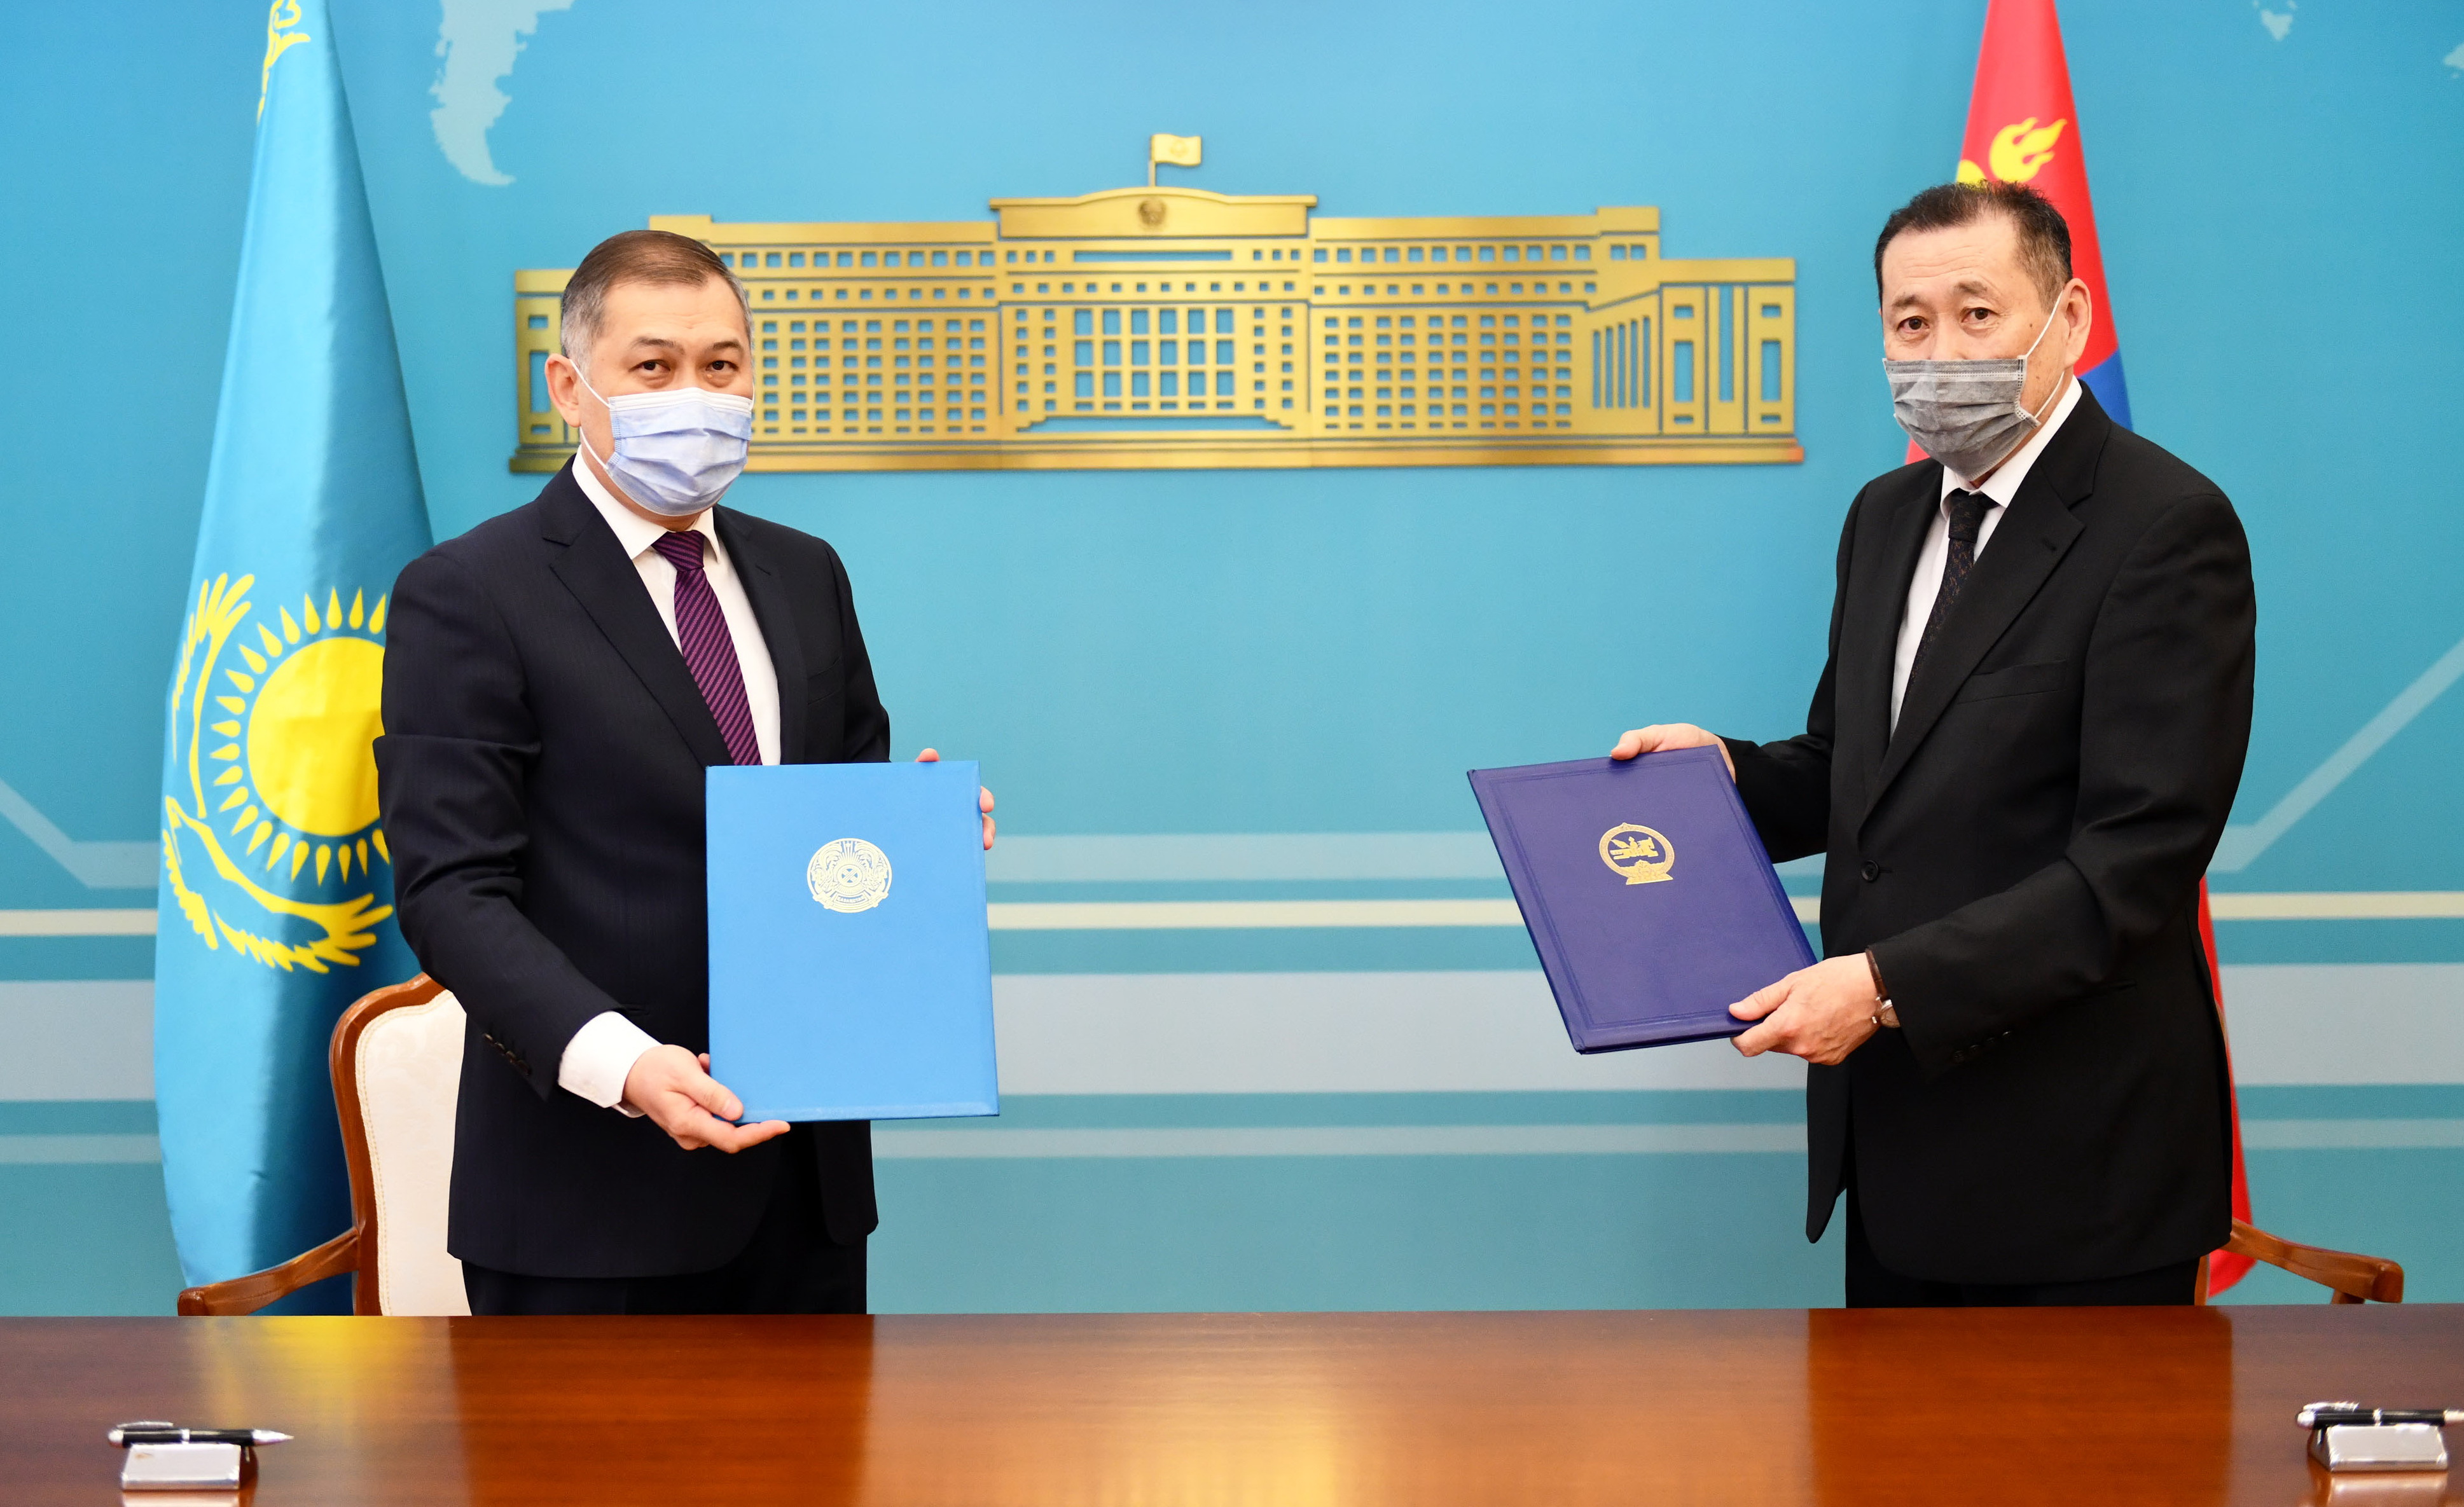 Казахстан и Монголия обменялись грамотами о ратификации Договора о передаче осужденных лиц